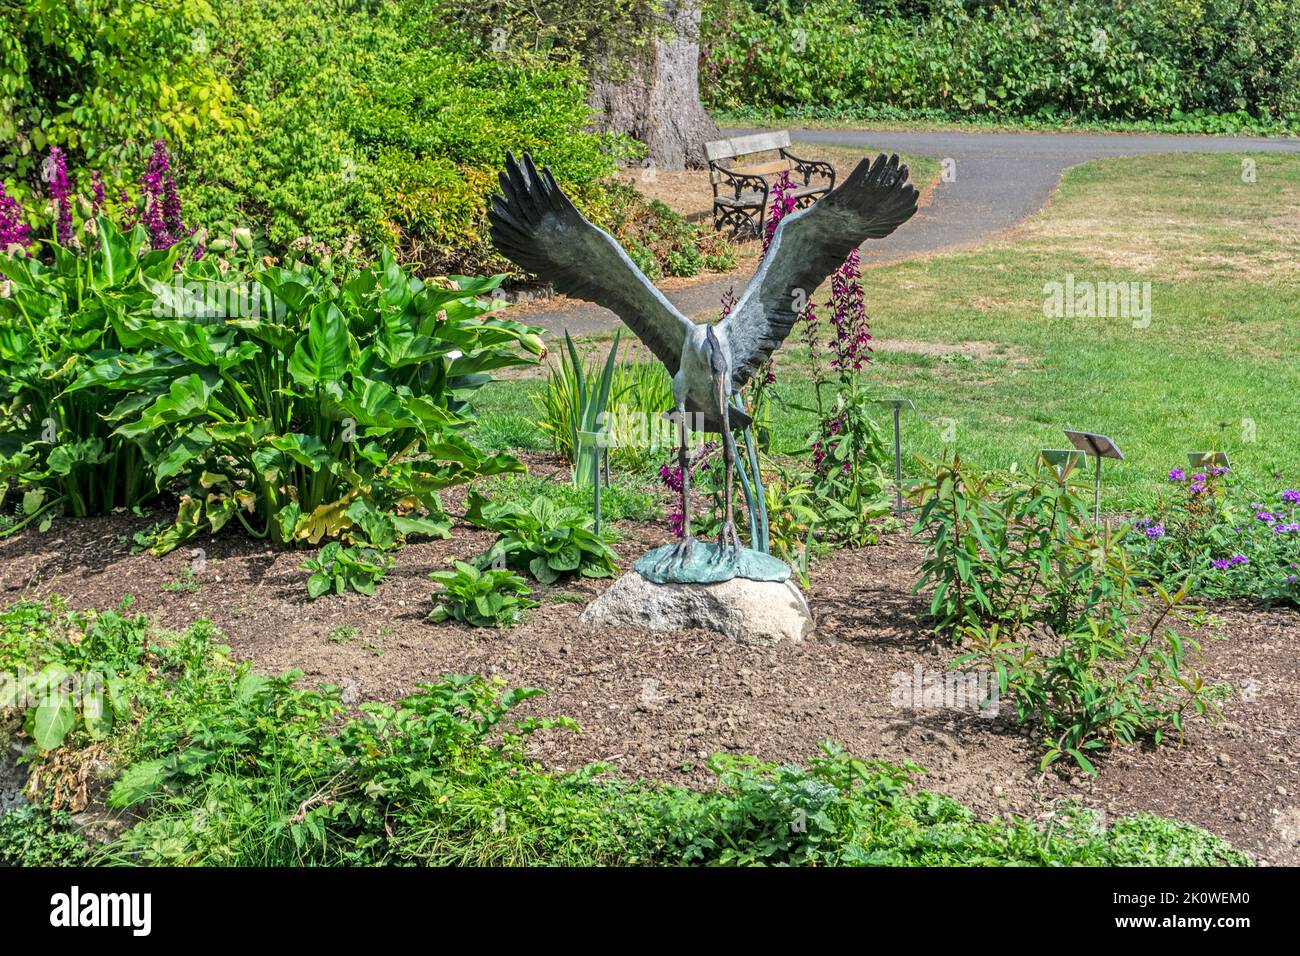 La escultura de bronce de Ester Barrett, Taking Flight, forma parte de la serie Escultura en contexto del Jardín Botánico Nacional de Irlanda. Foto de stock